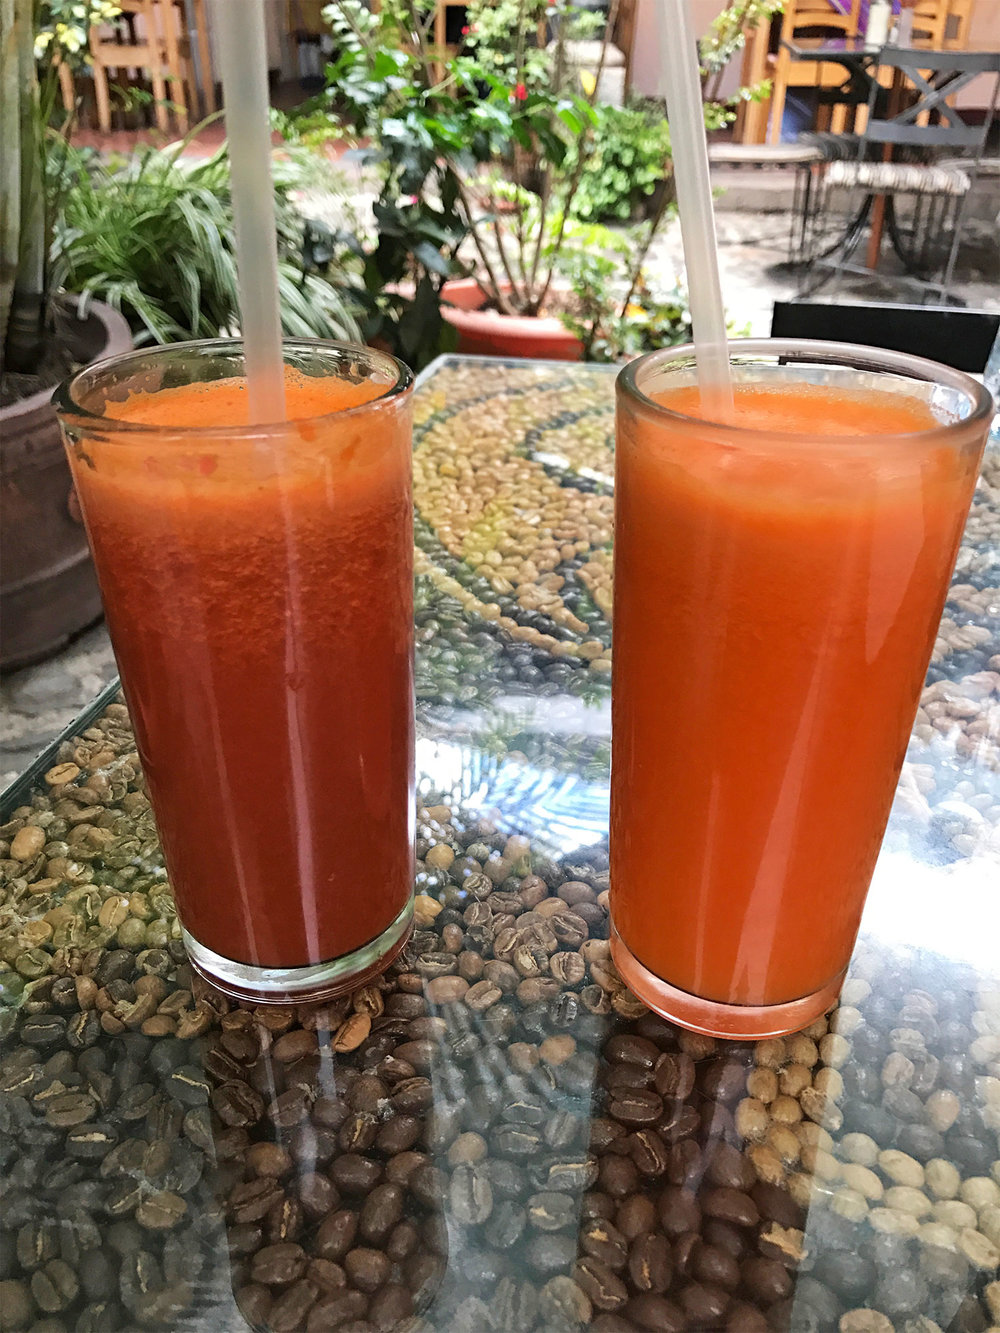 juices in Antigua Guatemala